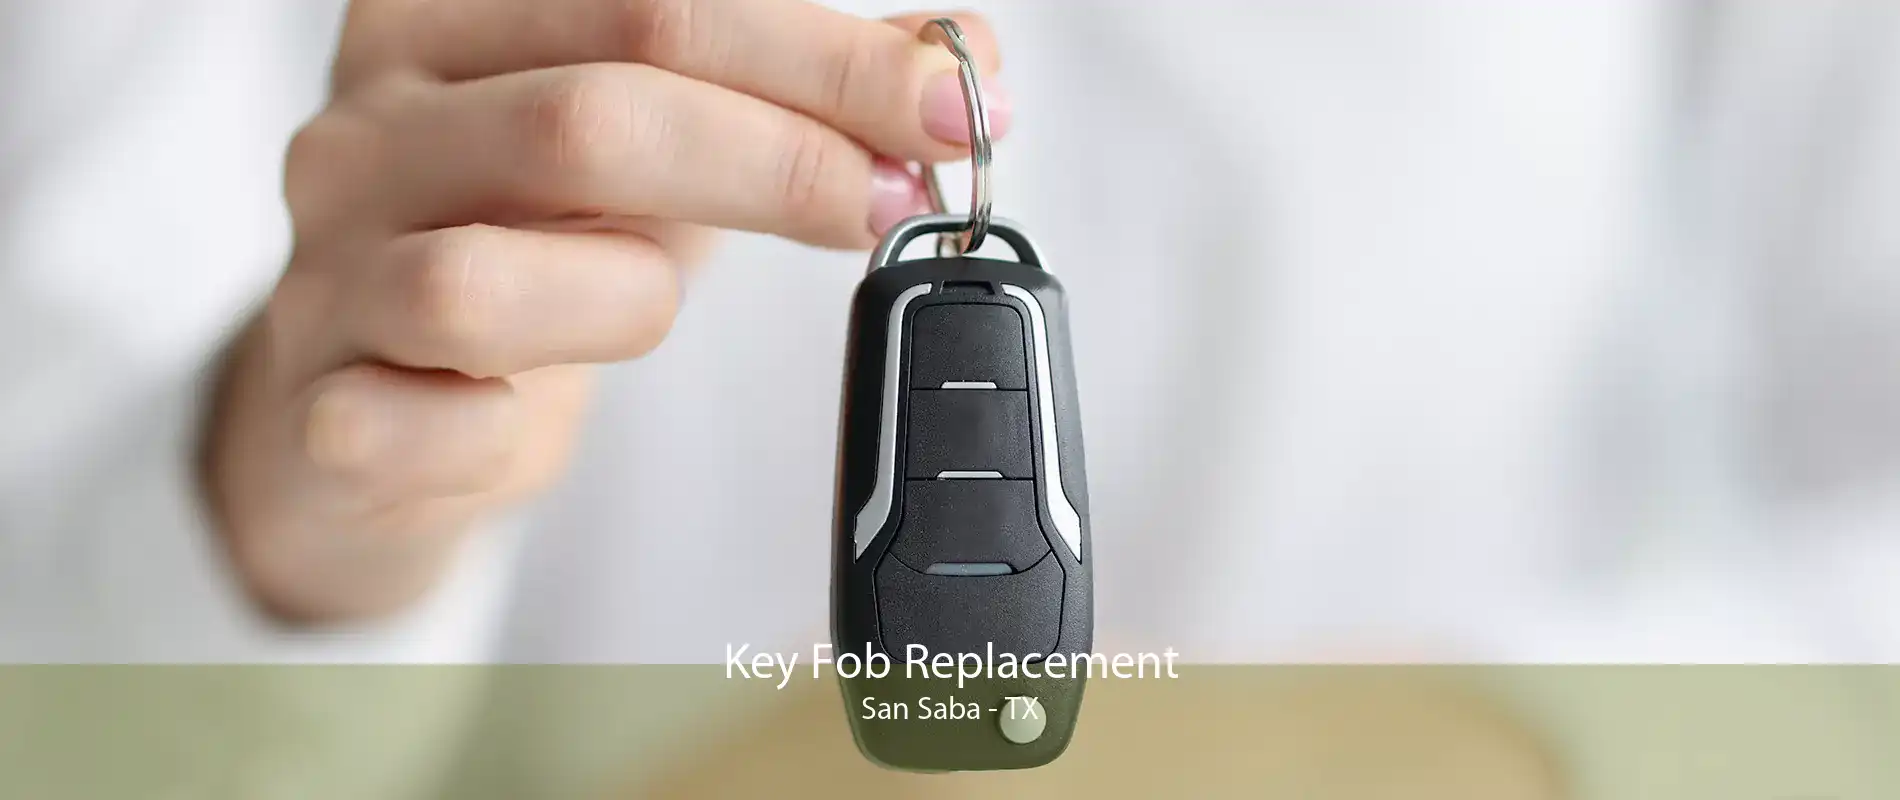 Key Fob Replacement San Saba - TX